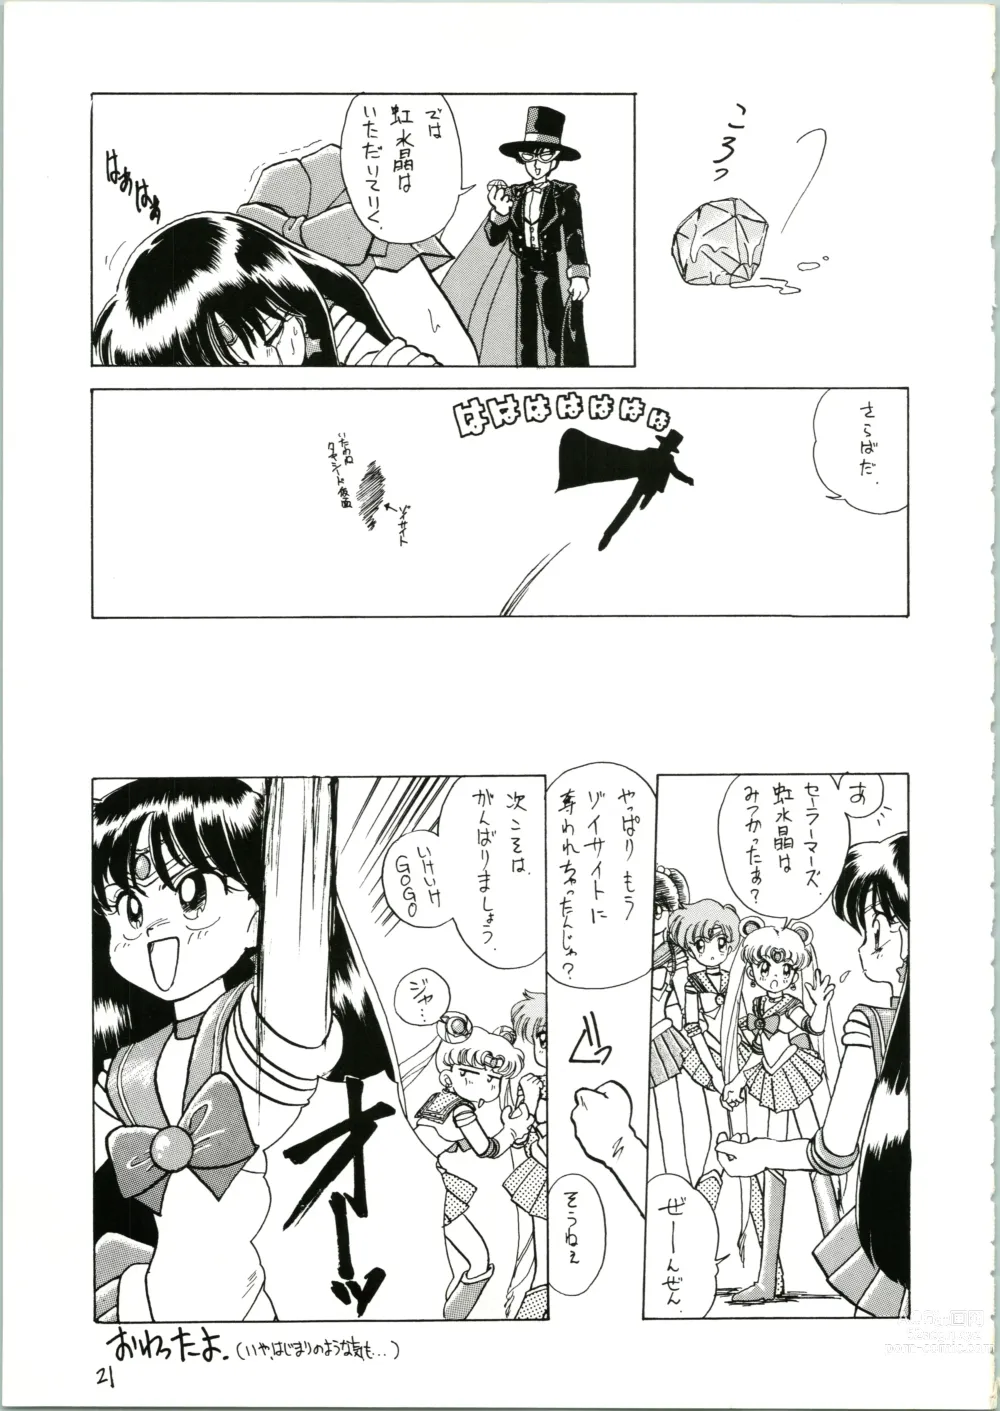 Page 21 of doujinshi Katatoki